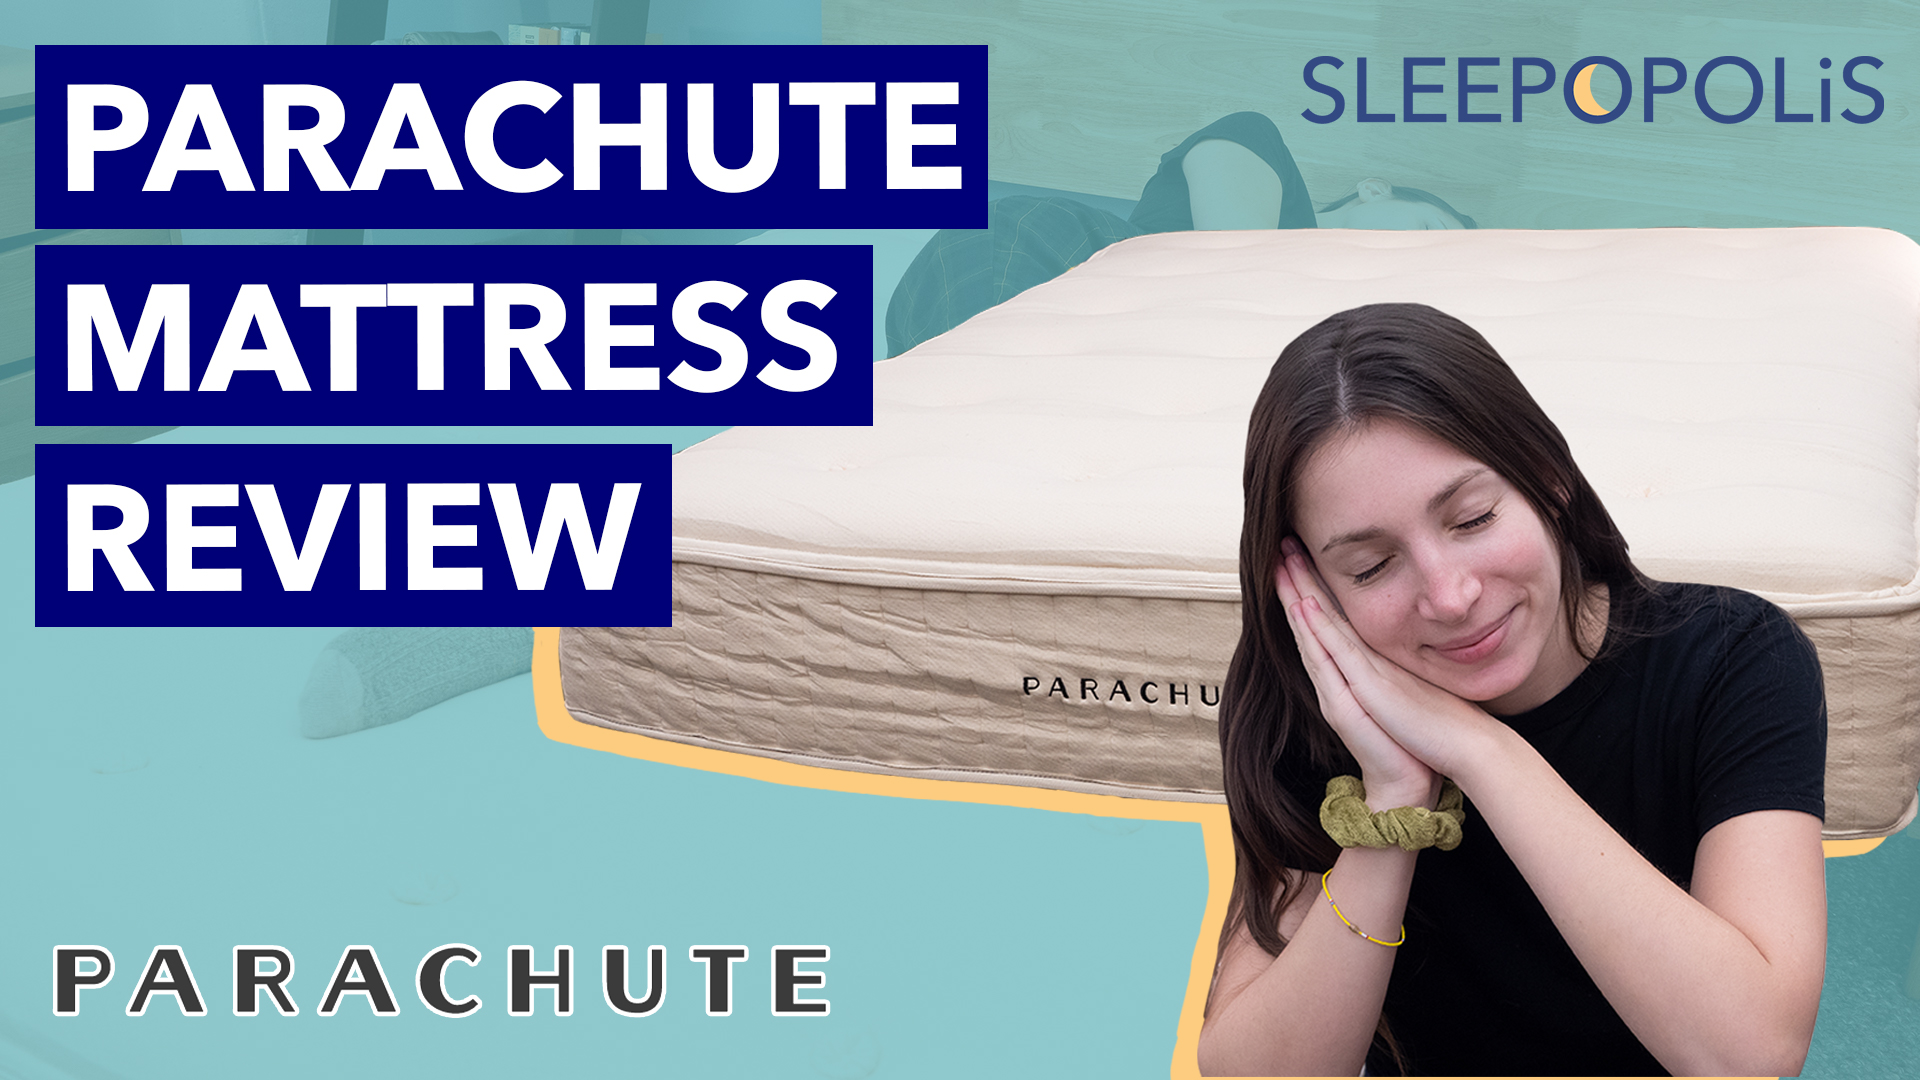 Parachute Mattress Review | Sleepopolis